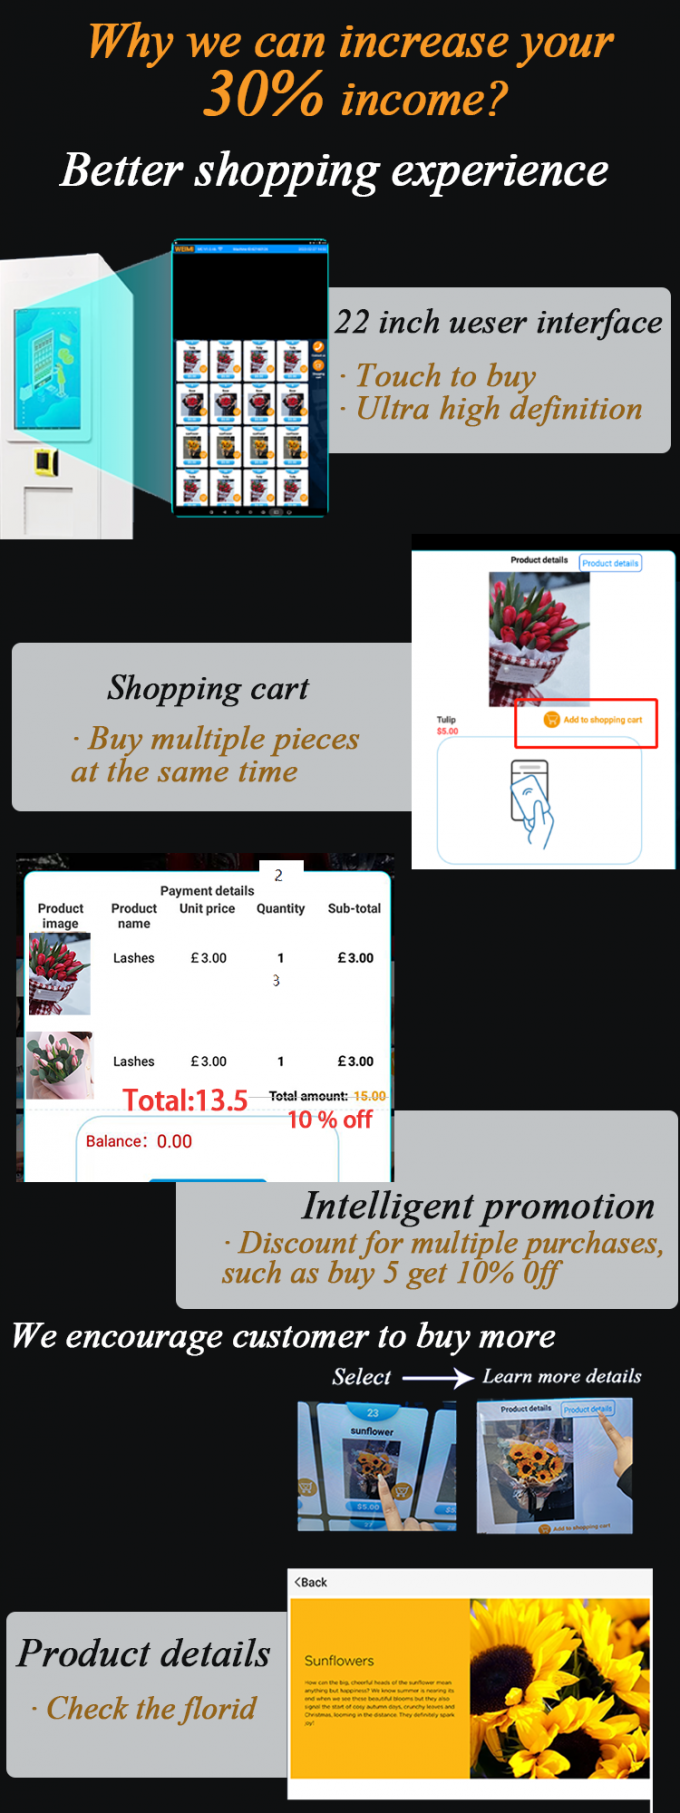 Γιατί επιλέξτε την έξυπνη μηχανή πώλησης λουλουδιών μικρού; Μπορούμε να αυξήσουμε το εισόδημα 30% σας! η μηχανή μας είναι ευφυής και προσφοράς εμπειρία αγορών πελατών καλύτερη